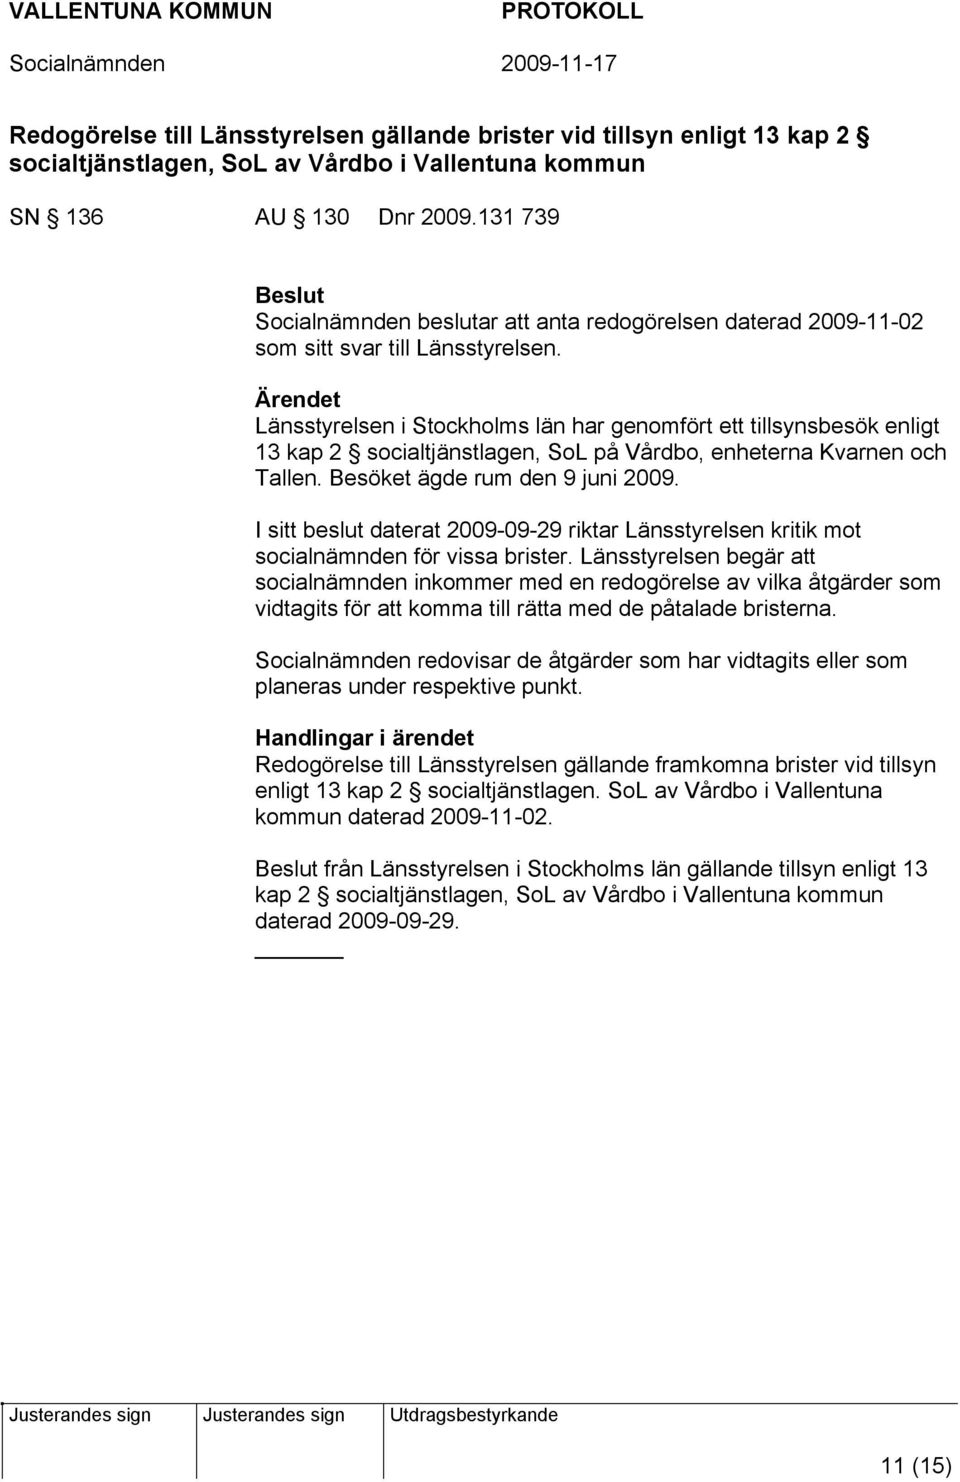 Länsstyrelsen i Stockholms län har genomfört ett tillsynsbesök enligt 13 kap 2 socialtjänstlagen, SoL på Vårdbo, enheterna Kvarnen och Tallen. Besöket ägde rum den 9 juni 2009.